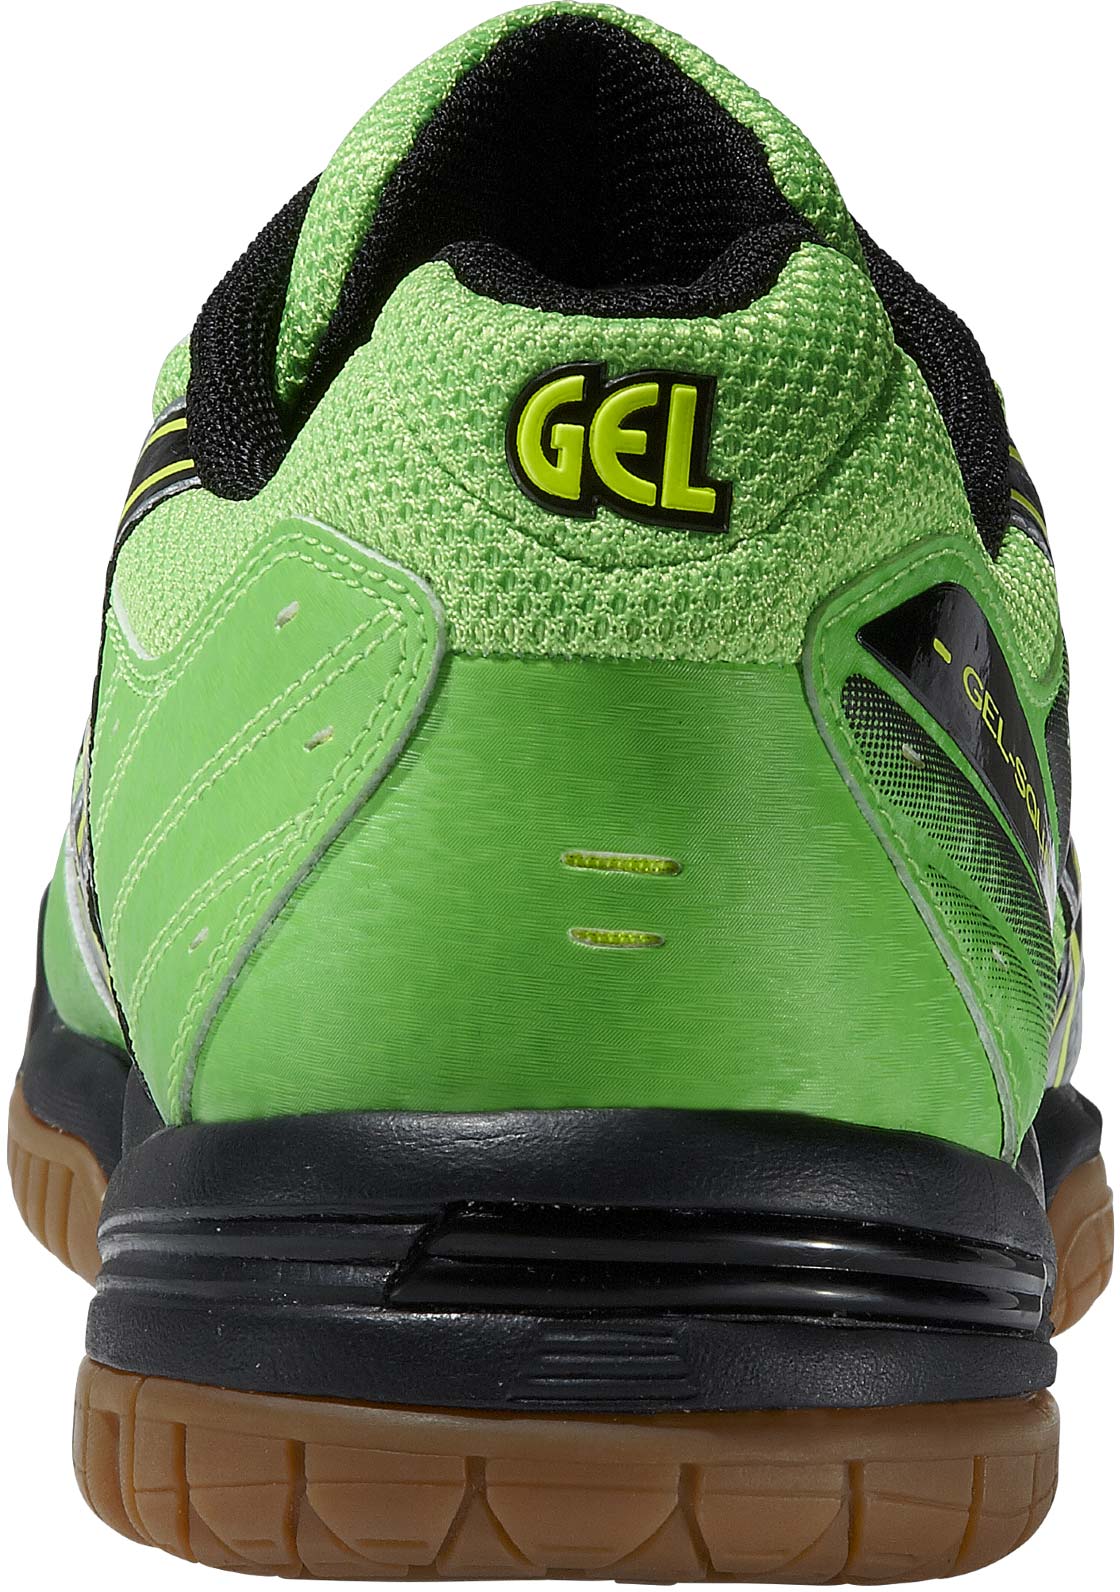 GEL SQUAD - Men's Indoor Shoes